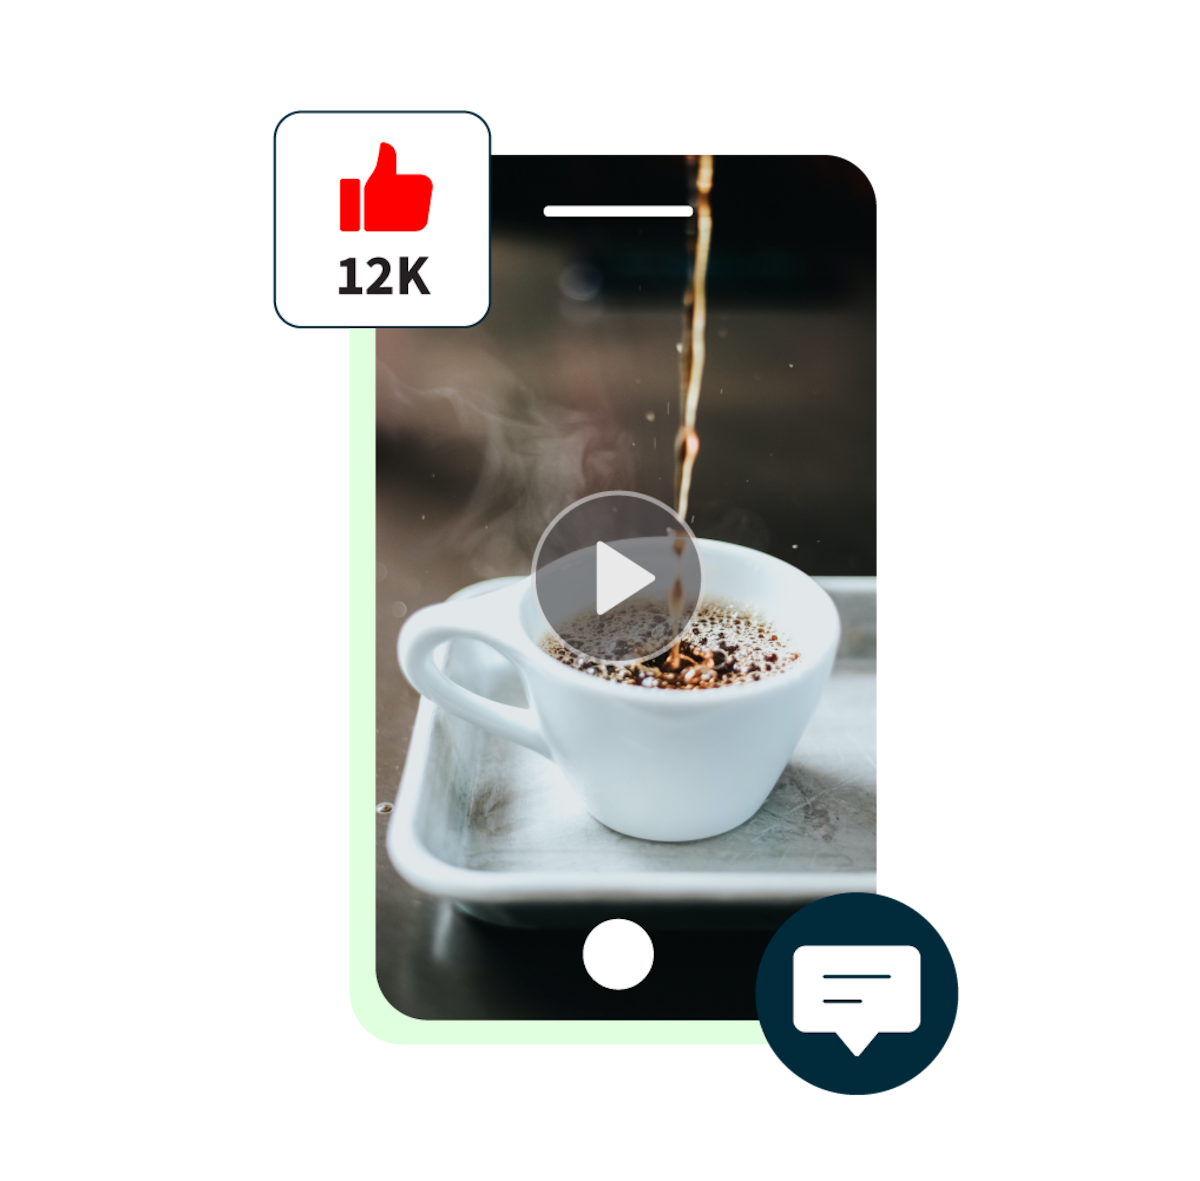 miniature vidéo youtube d'un café en train d'être versé, accompagnée d'un pop-up de 12 000 likes